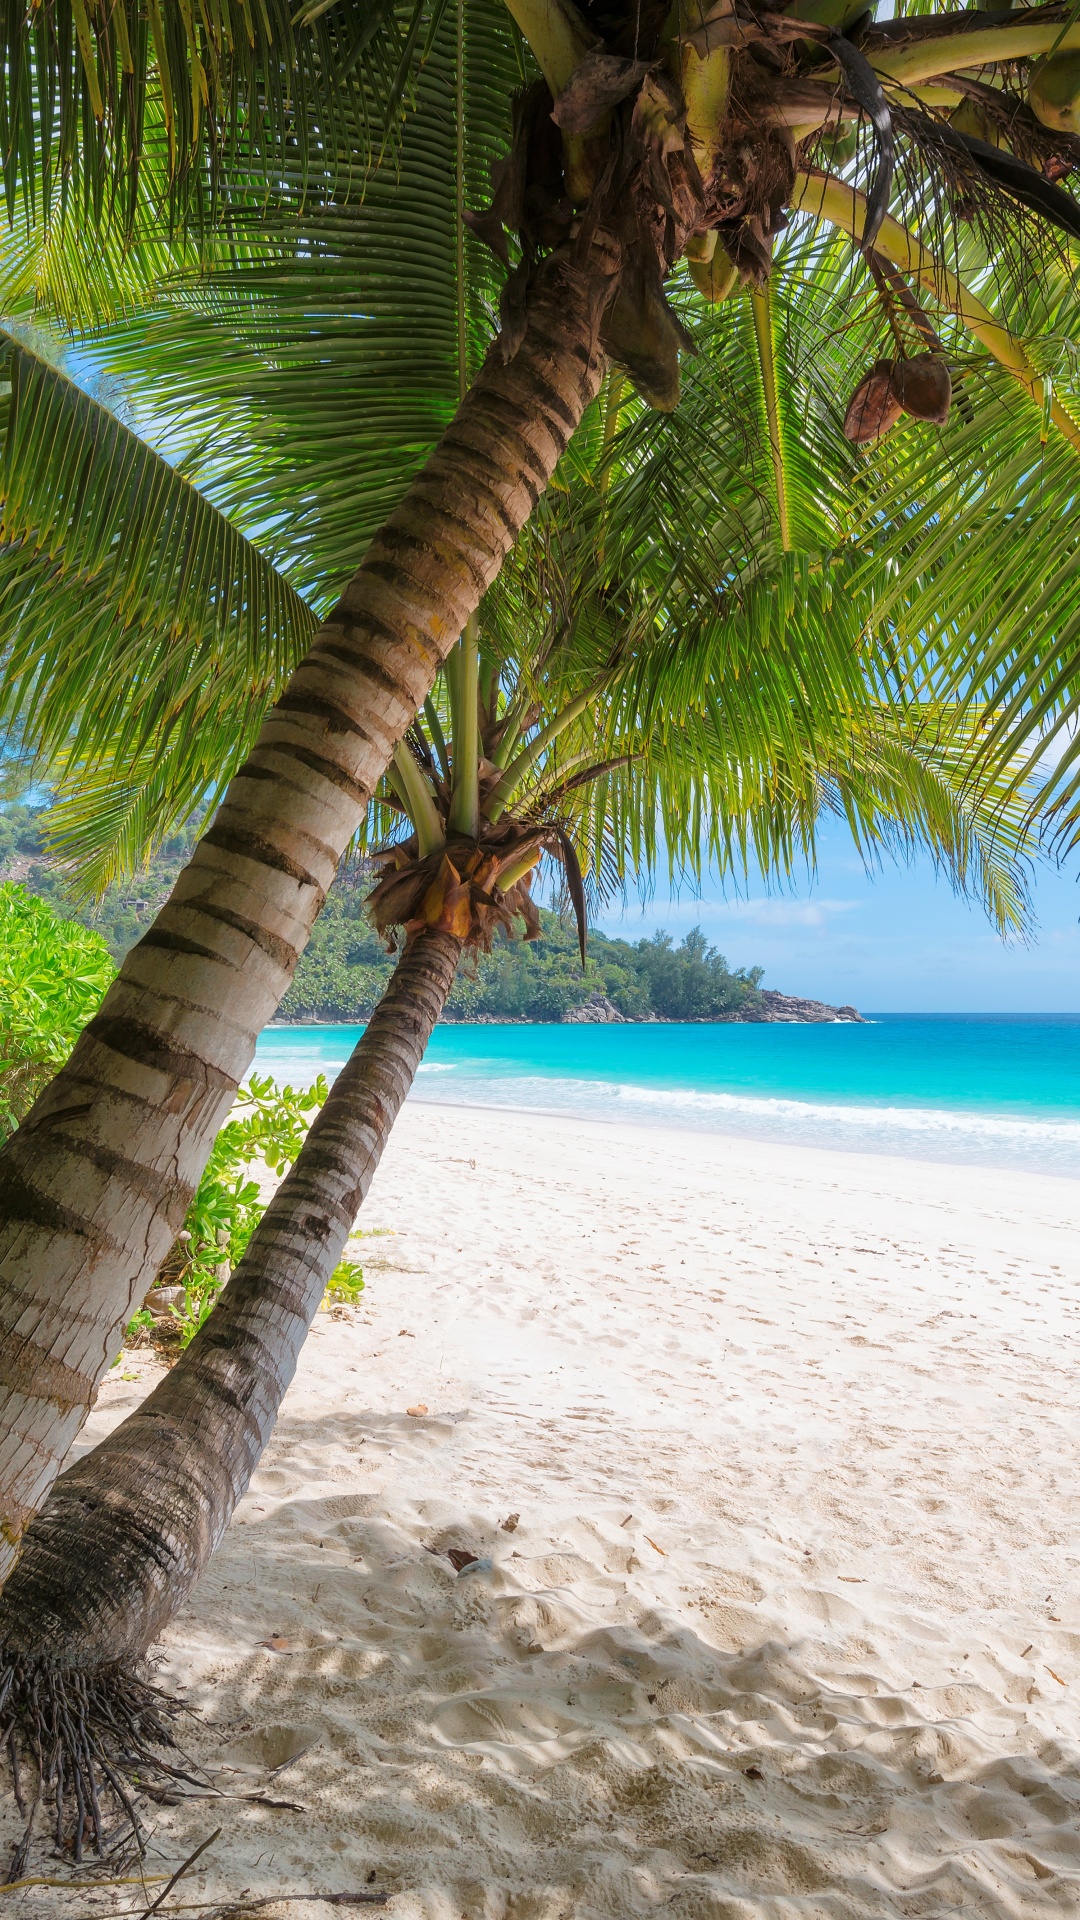 岸边, 热带地区, 加勒比, 度假, 度假村 壁纸 1080x1920 允许